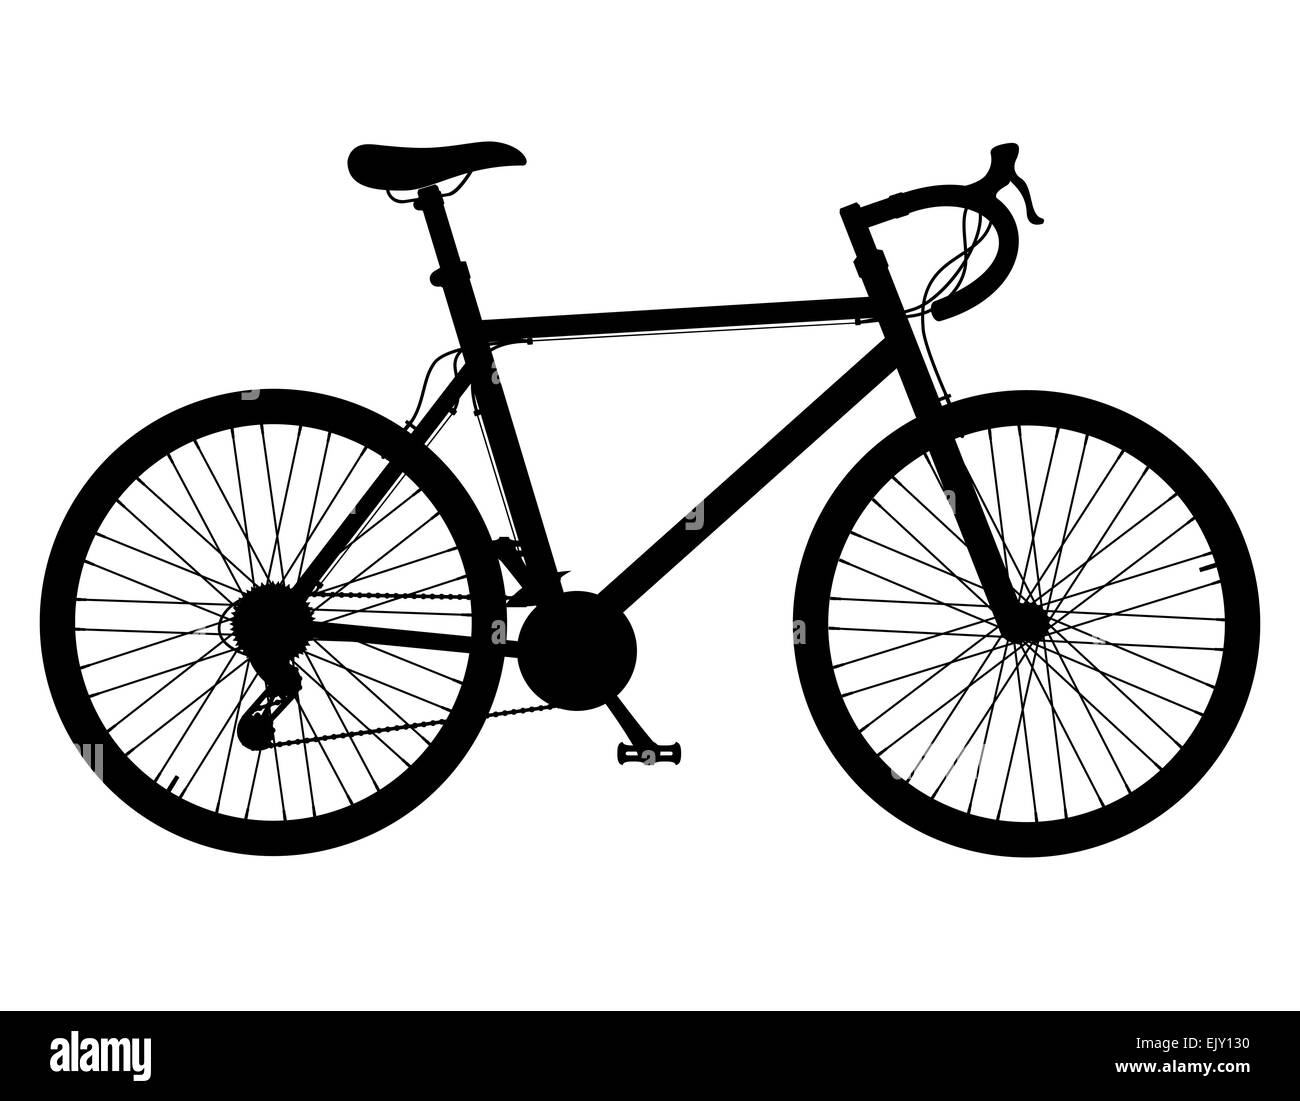 Rennrad mit Gangschaltung schwarze Silhouette Abbildung isoliert auf weißem  Hintergrund Stockfotografie - Alamy